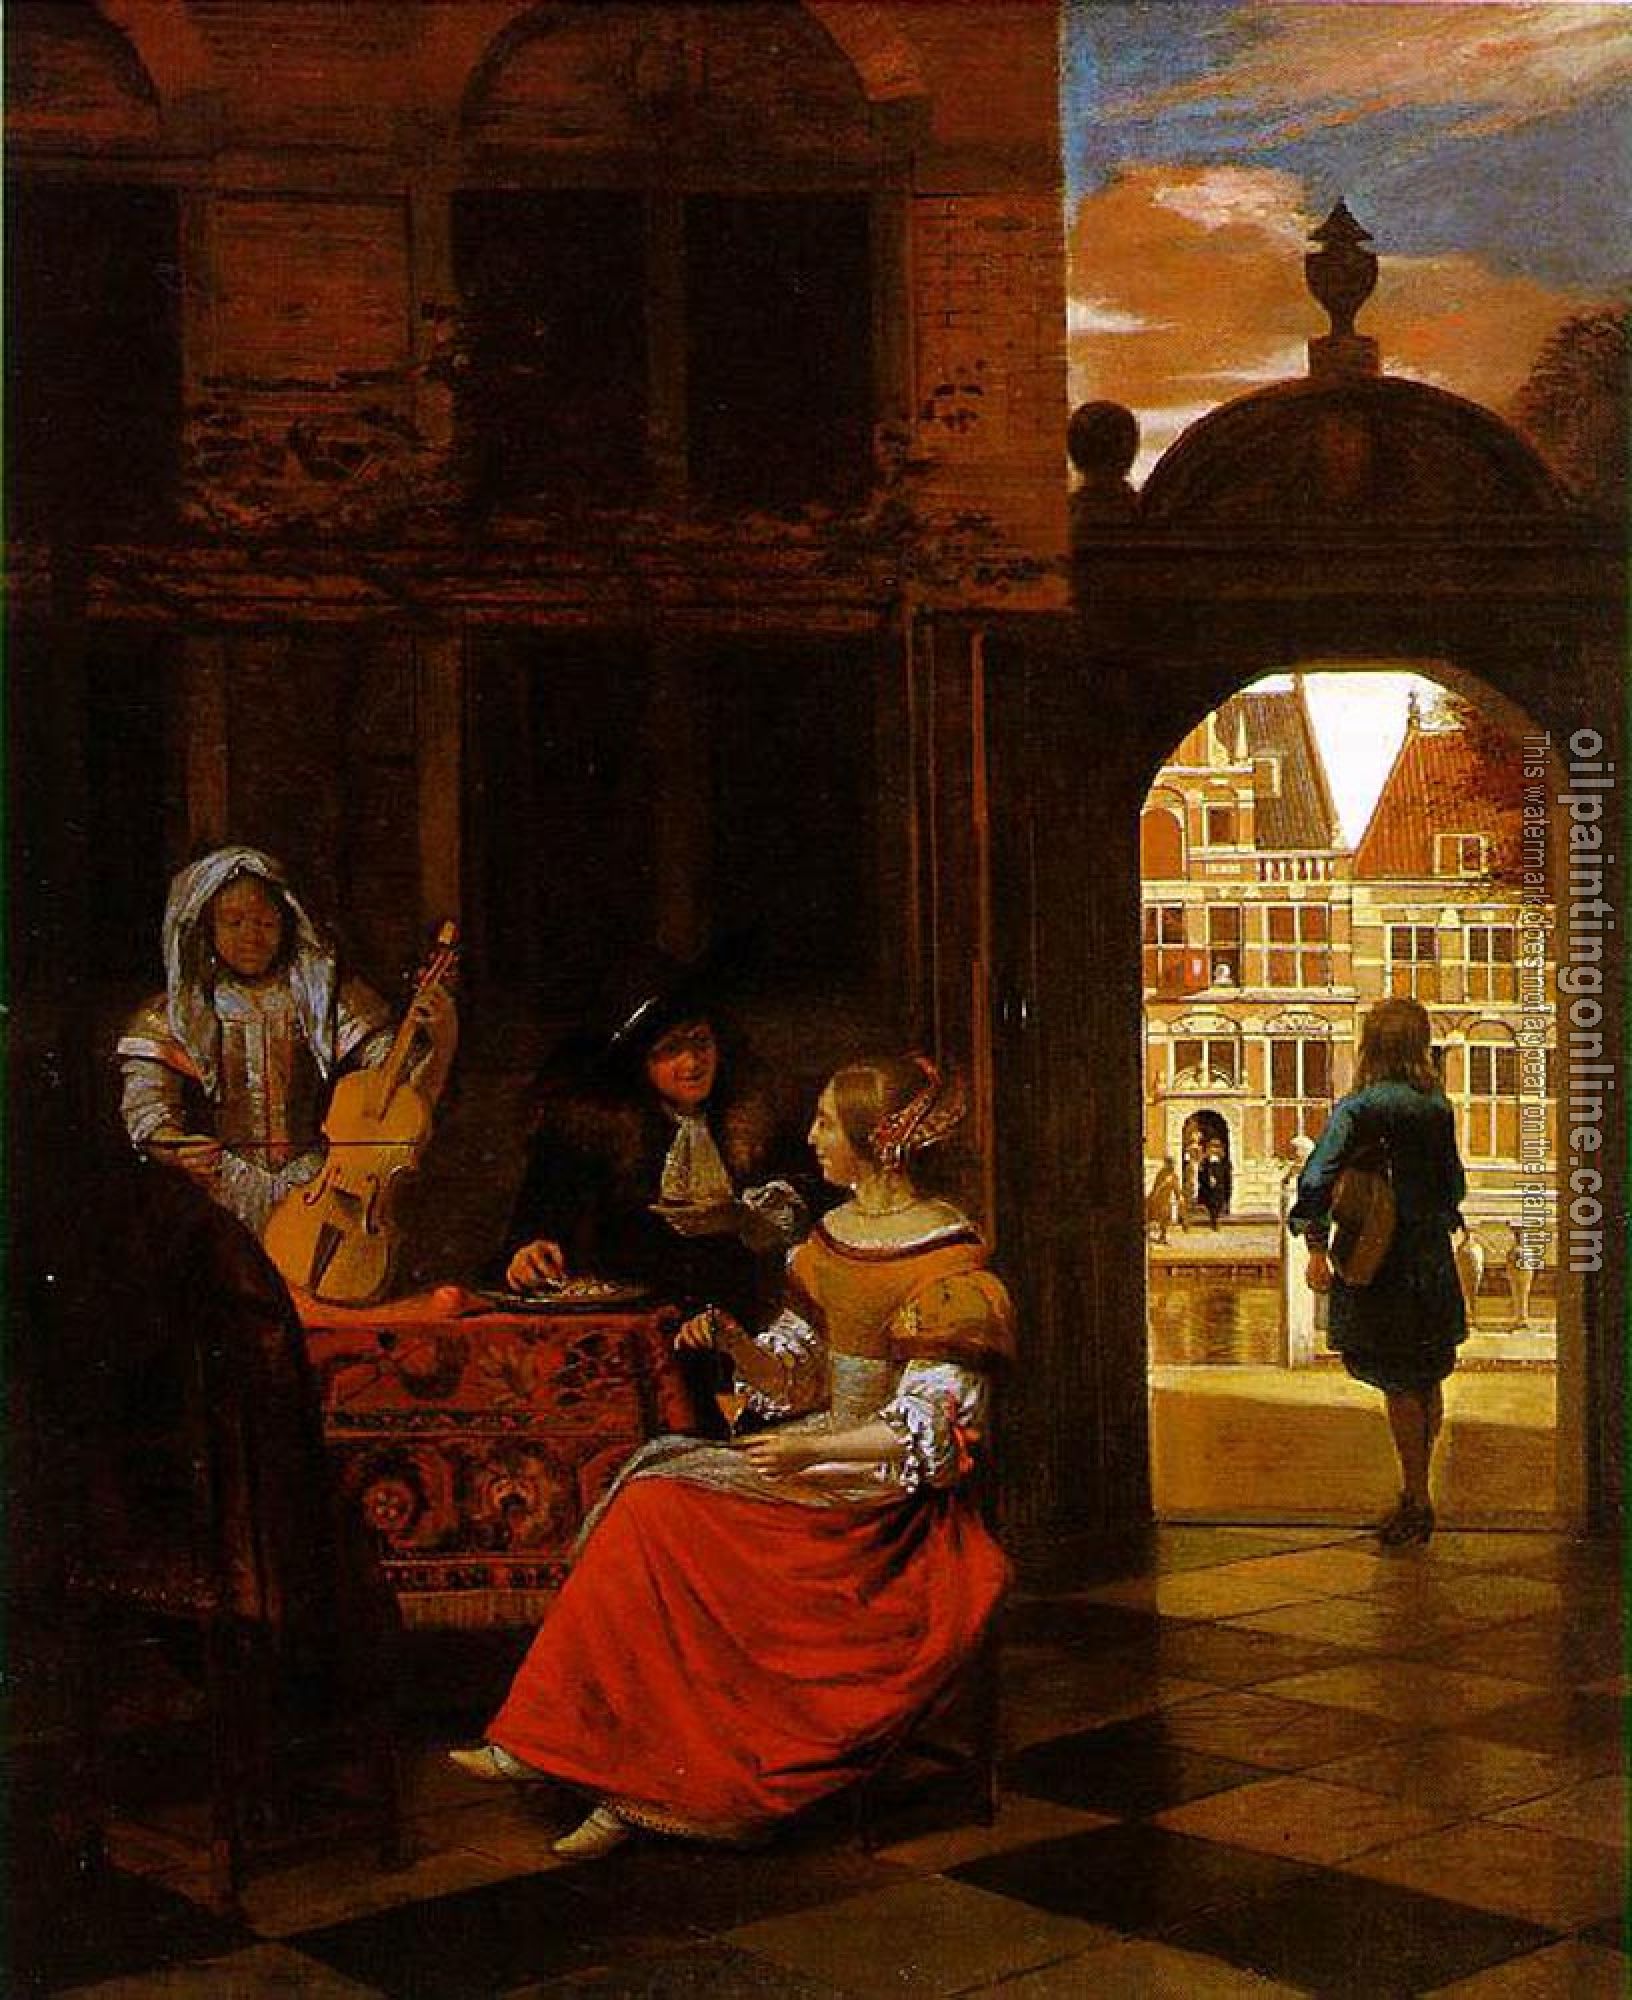 Pieter de Hooch - Musical Party in a Courtyard